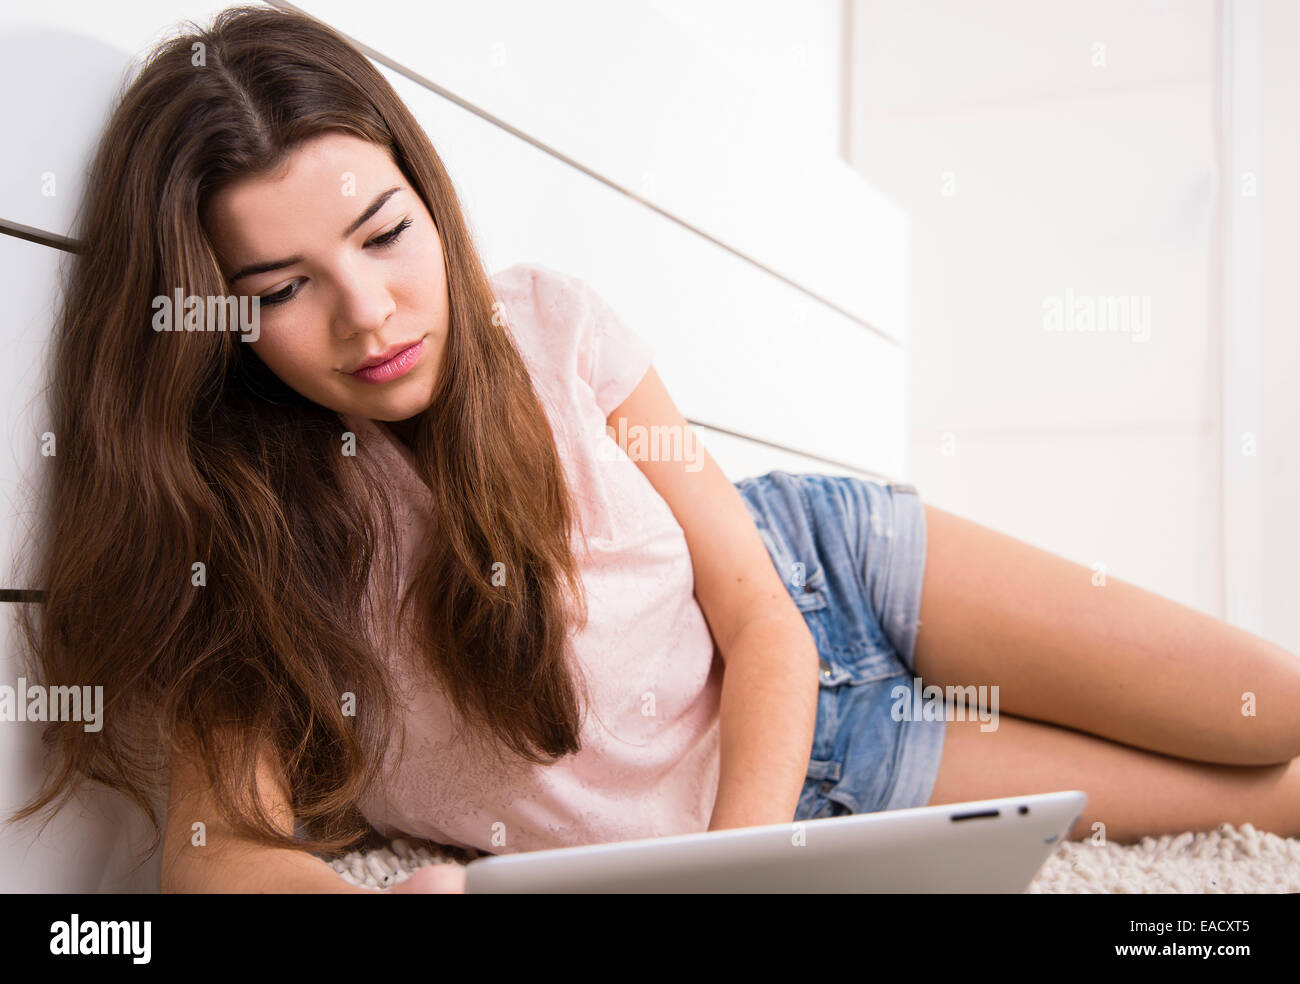 Frau auf dem Boden liegend, mit einem Tabletcomputer Stockfoto